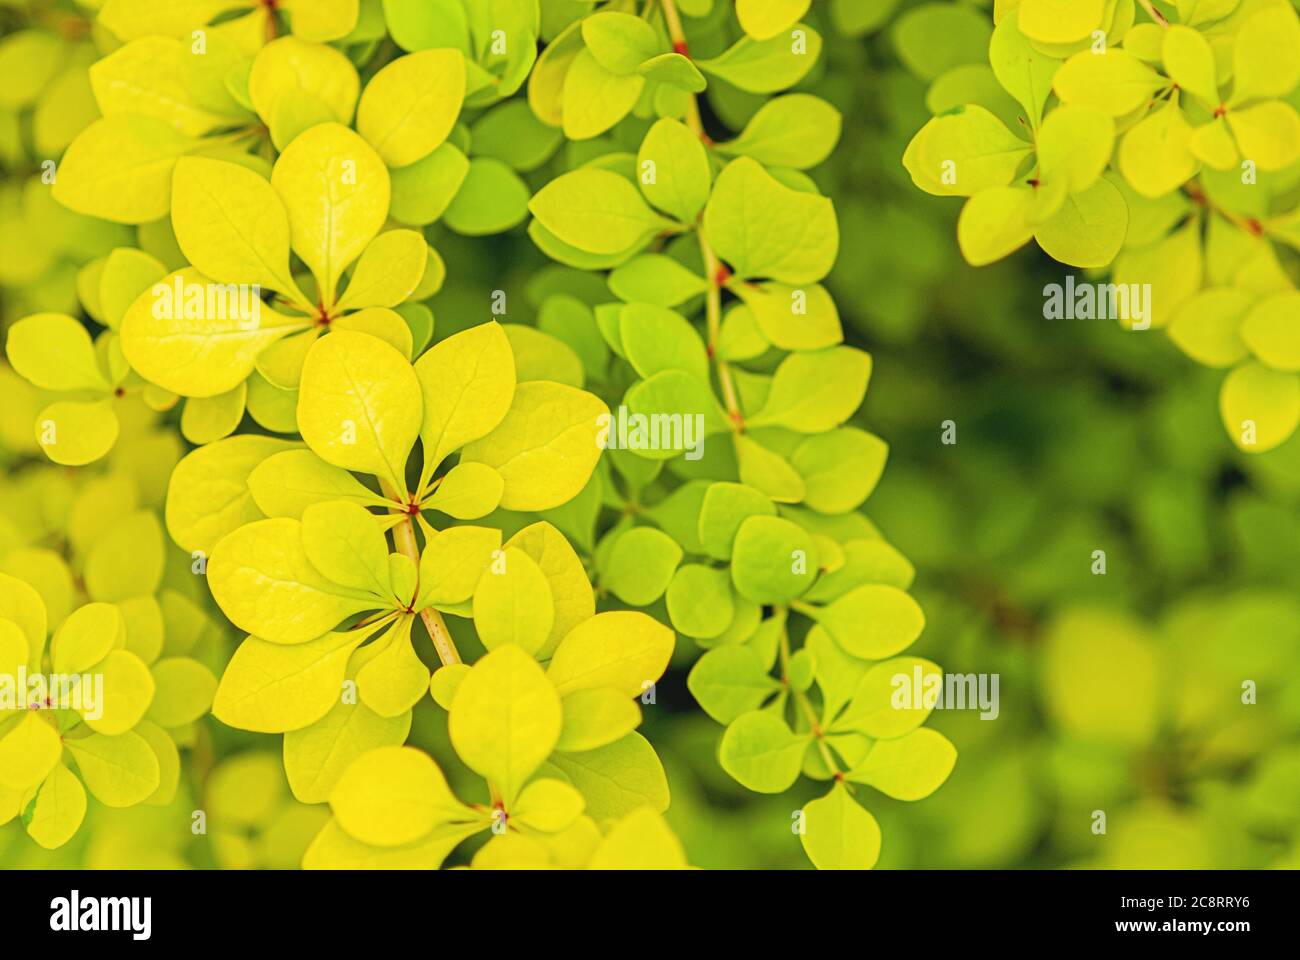 Feuilles vertes jaunes de baryère japonaise dorée, Berberis thunbergii Aurea feuillage fond Banque D'Images